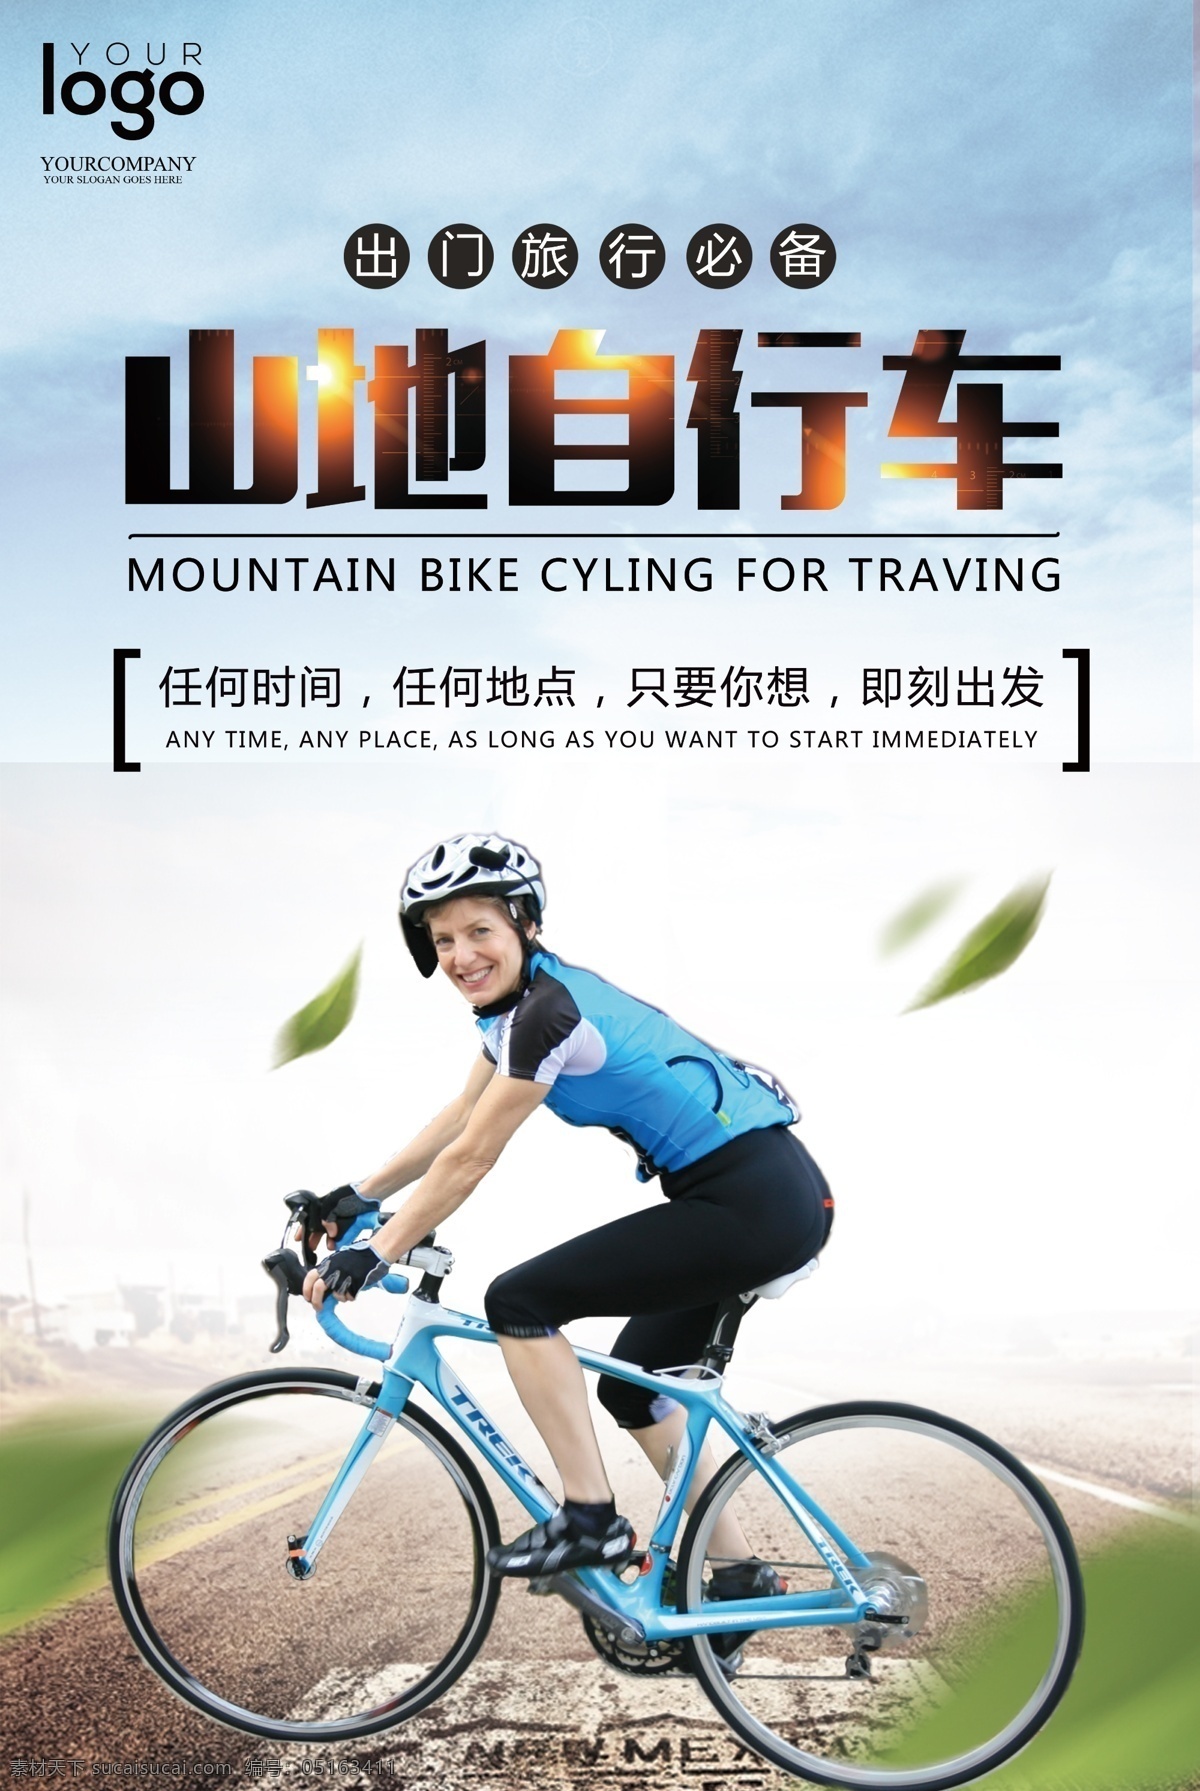 创意 山地 自行车 海报 骑行 旅行 运动健身 山地车 骑行海报 骑行天下 骑行西藏 西藏之旅 绿色骑行 乐在骑中 环游中国 环游世界 公路旅行 孤独行者 骑行驴友 骑行青春 自行车赛 山地自行车